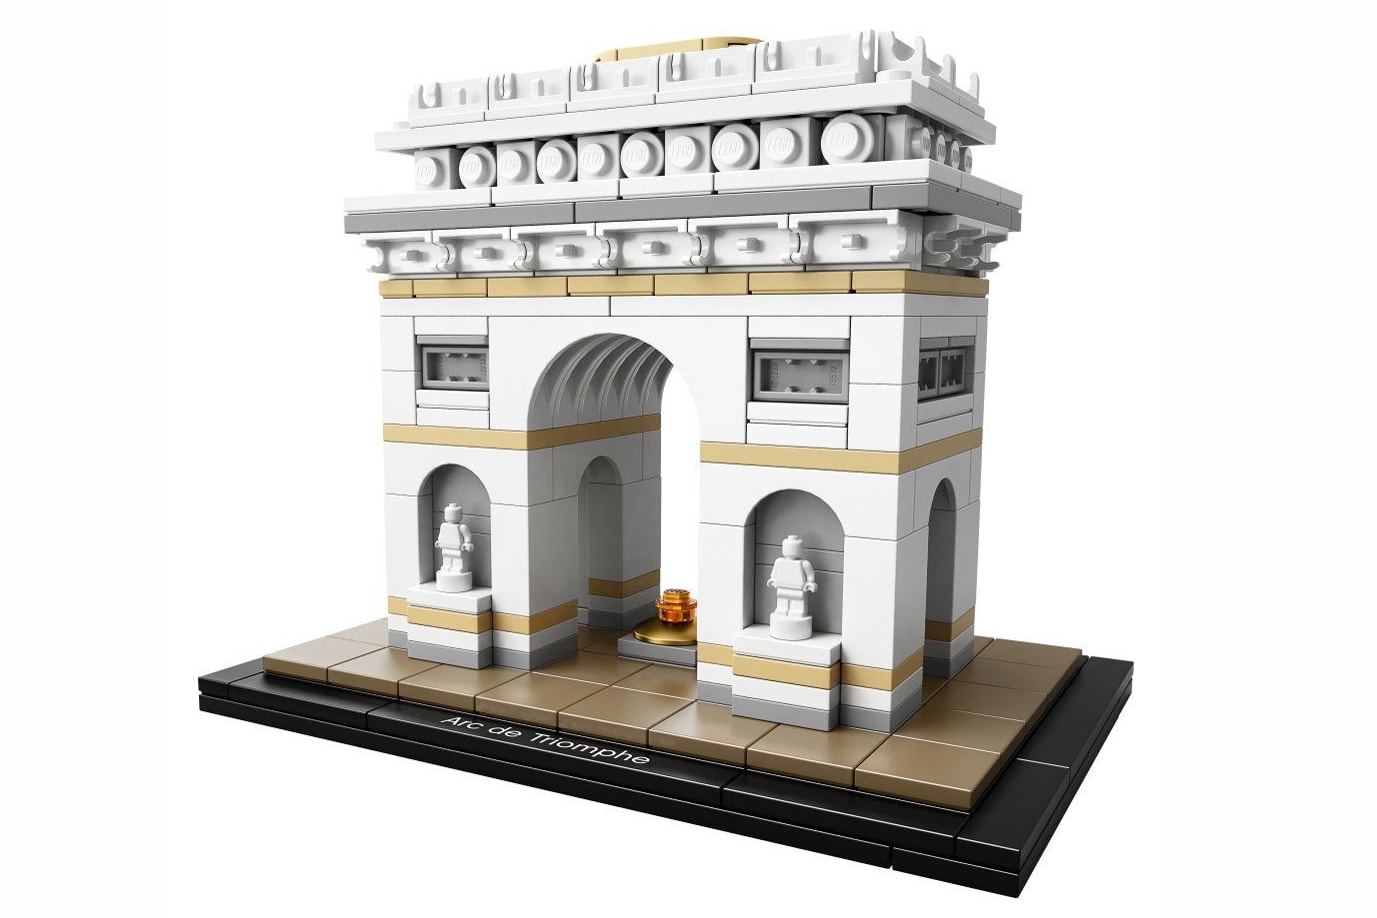 LEGO Archictecture 將推出法國凱旋門「Arc de Triomphe」積木模型